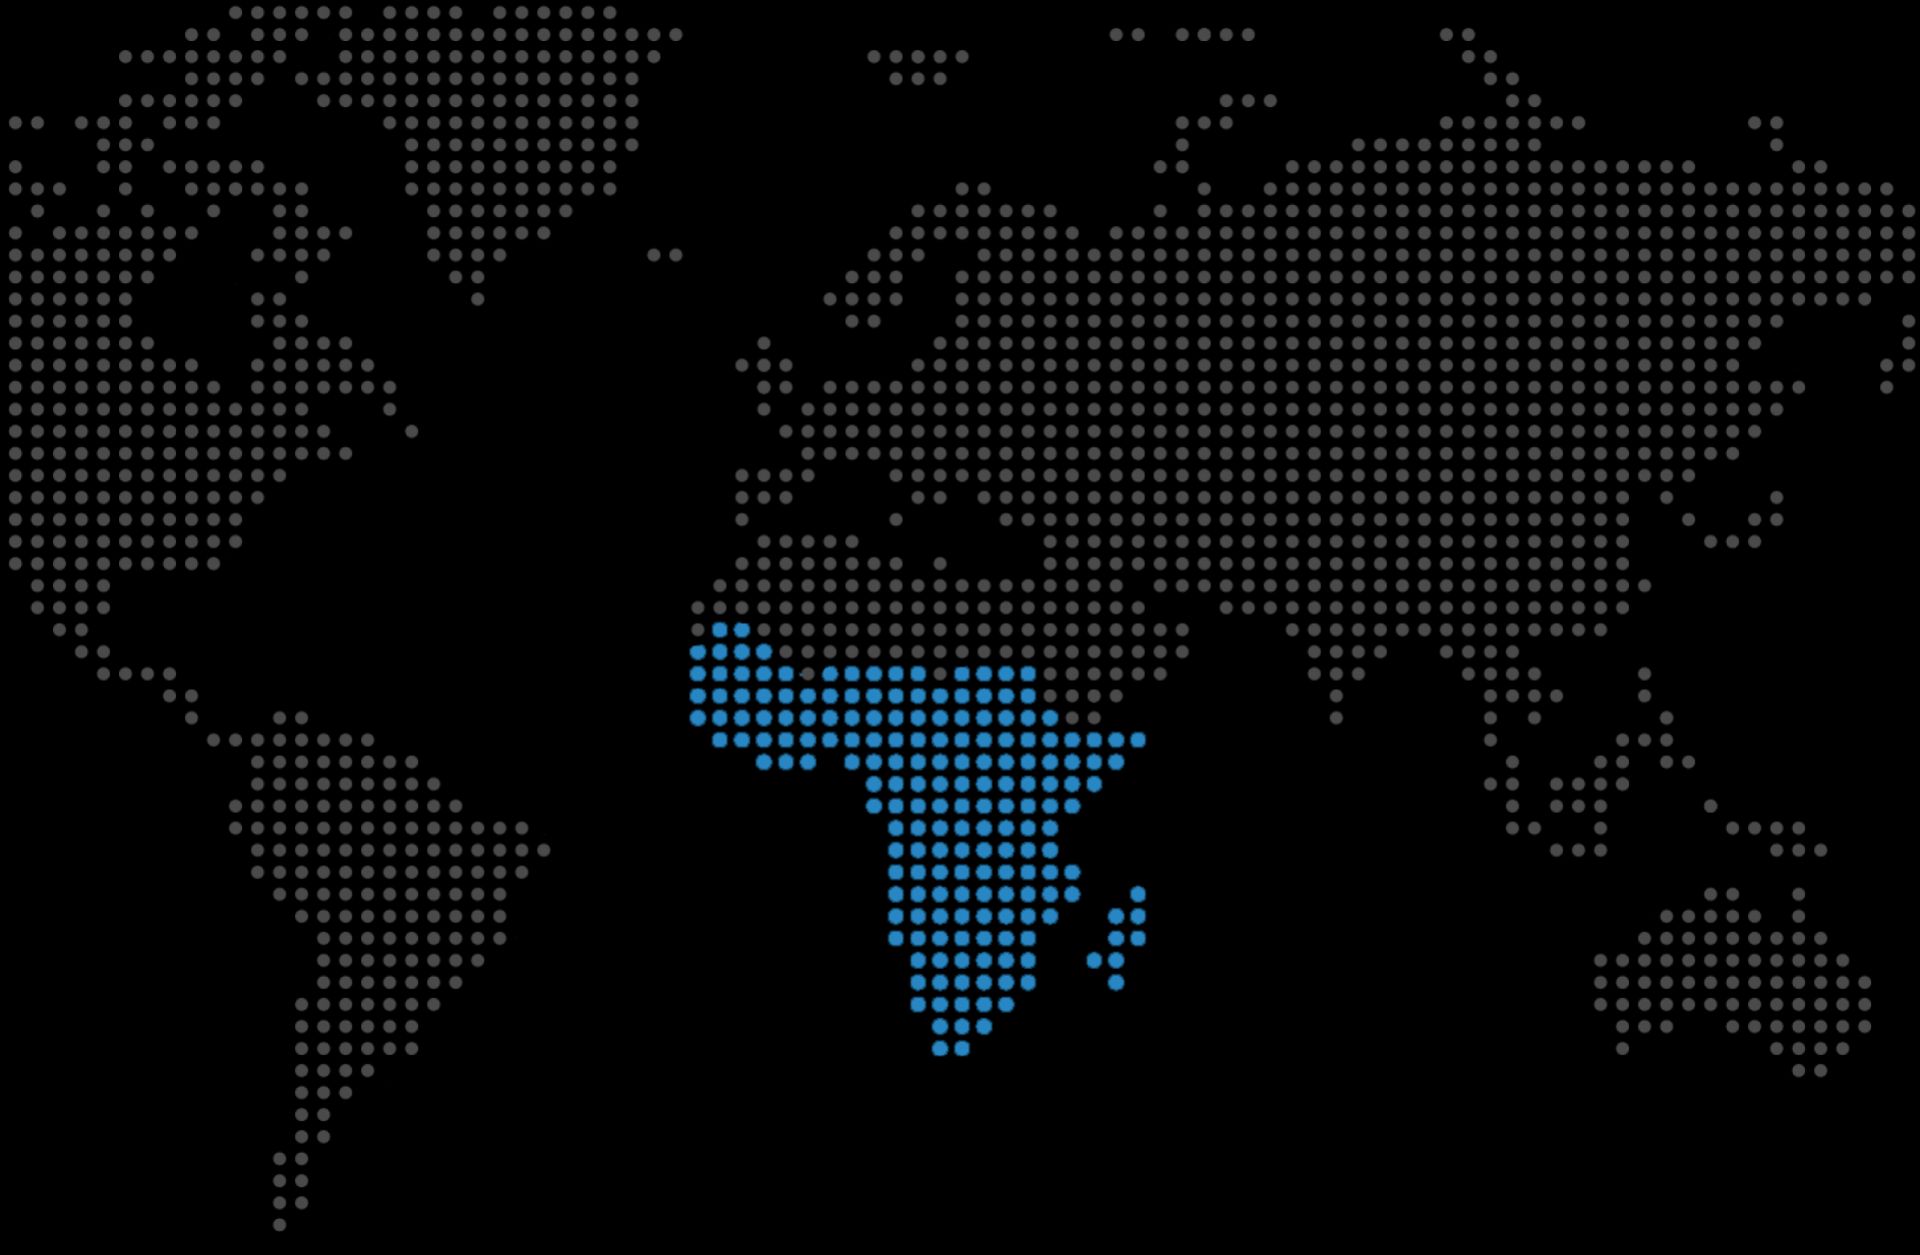 A map shows sub-Saharan Africa